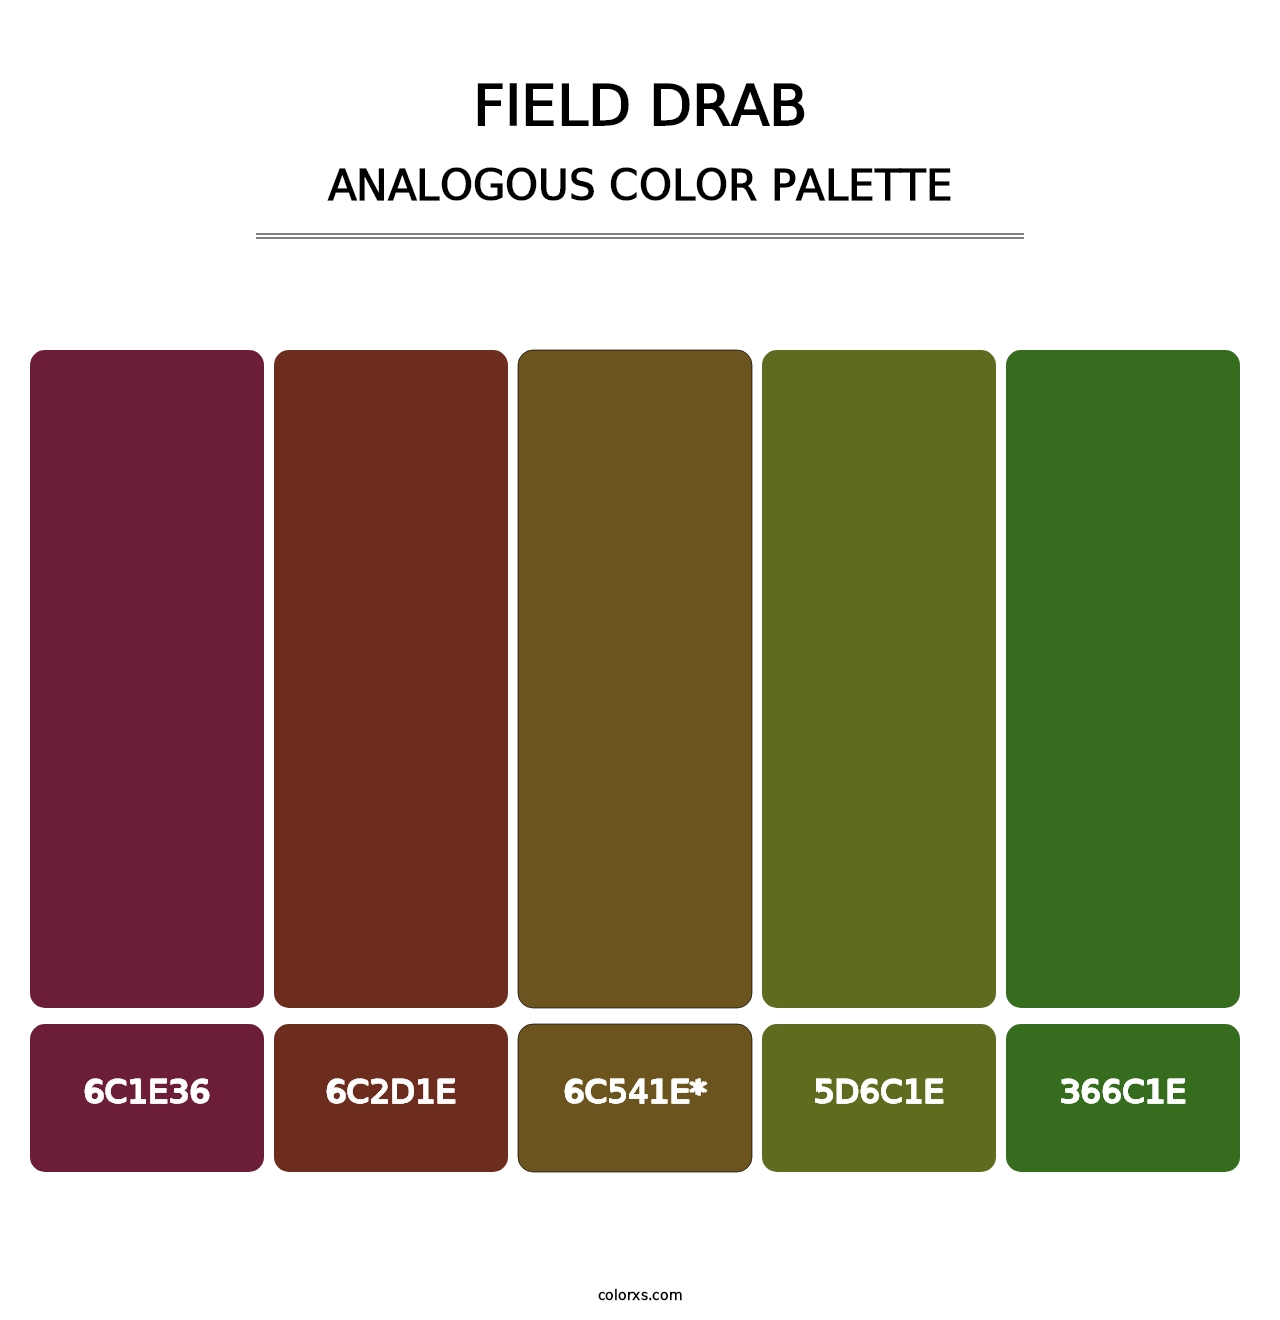 Field Drab - Analogous Color Palette